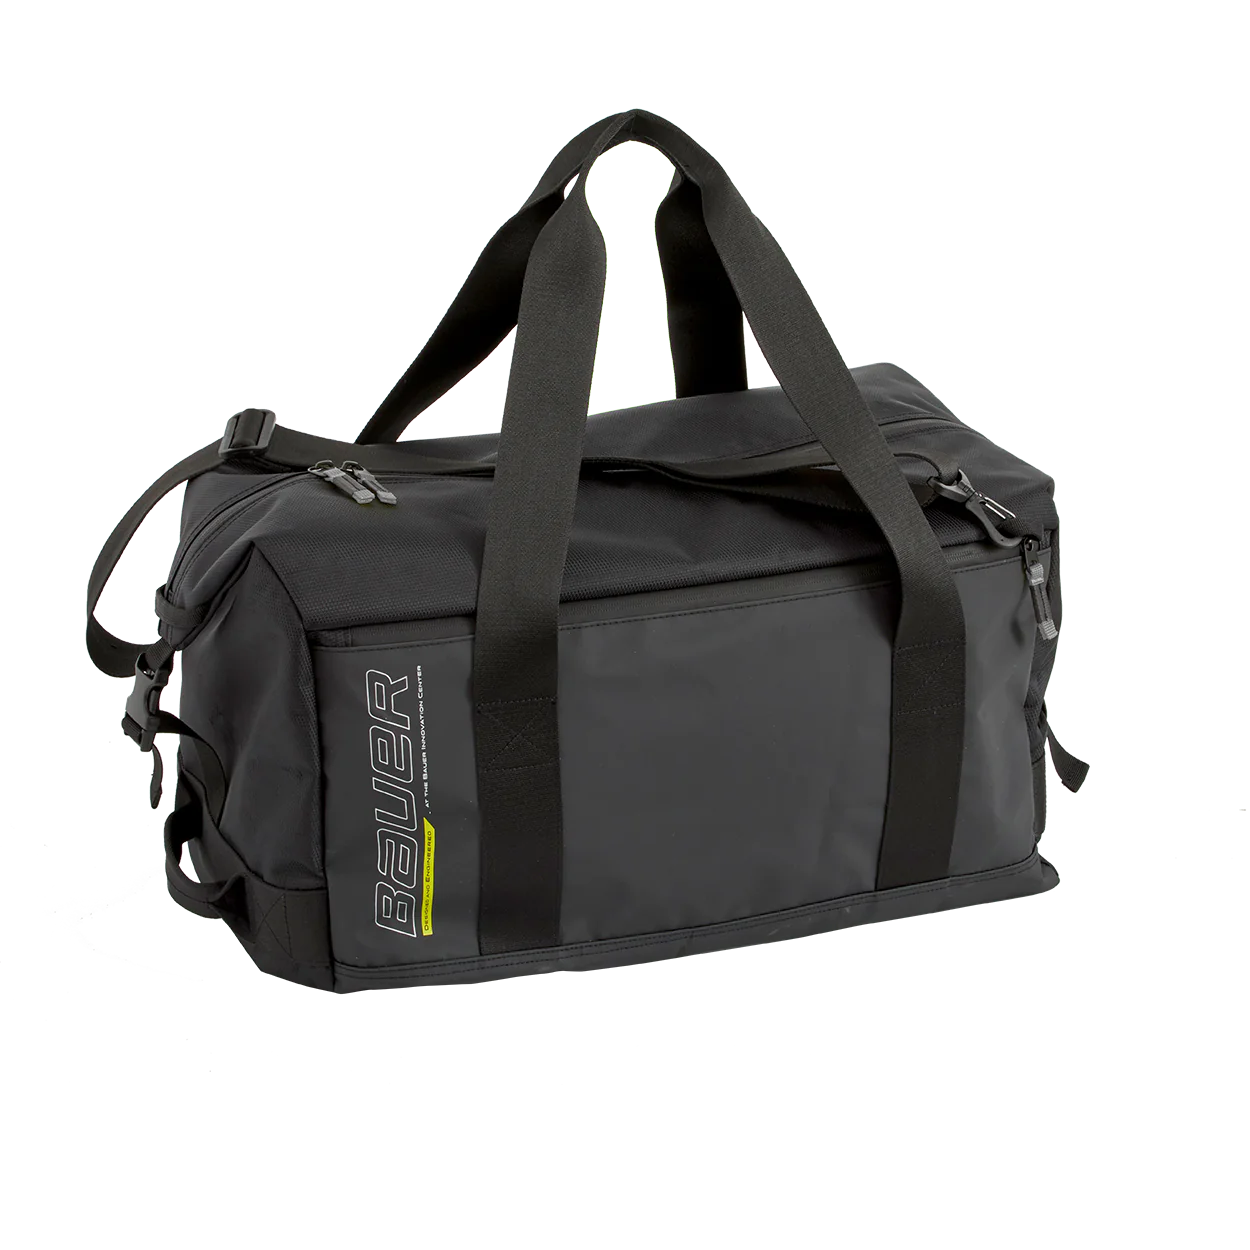 Bauer Premium Duffle Bag